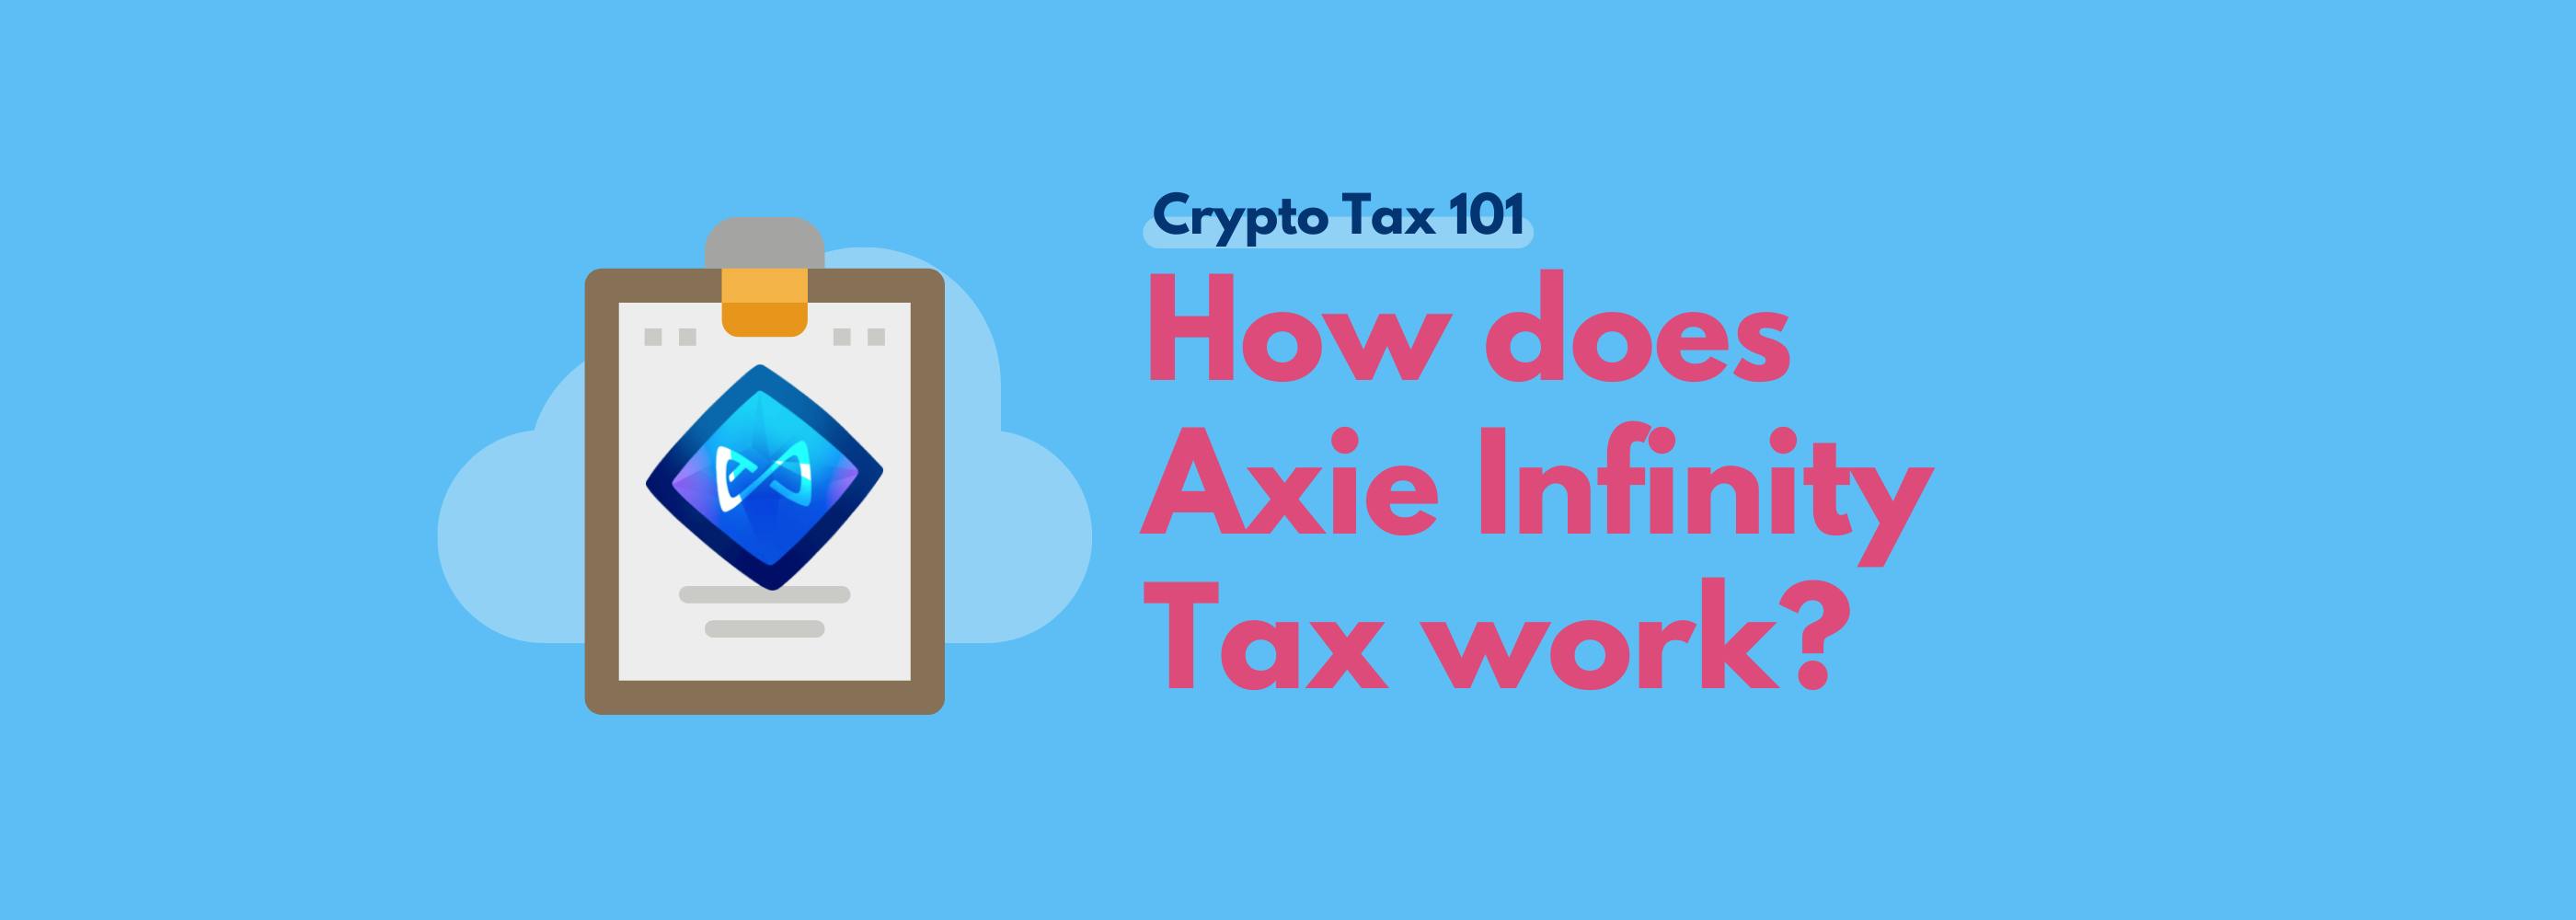 Axie infinity tax